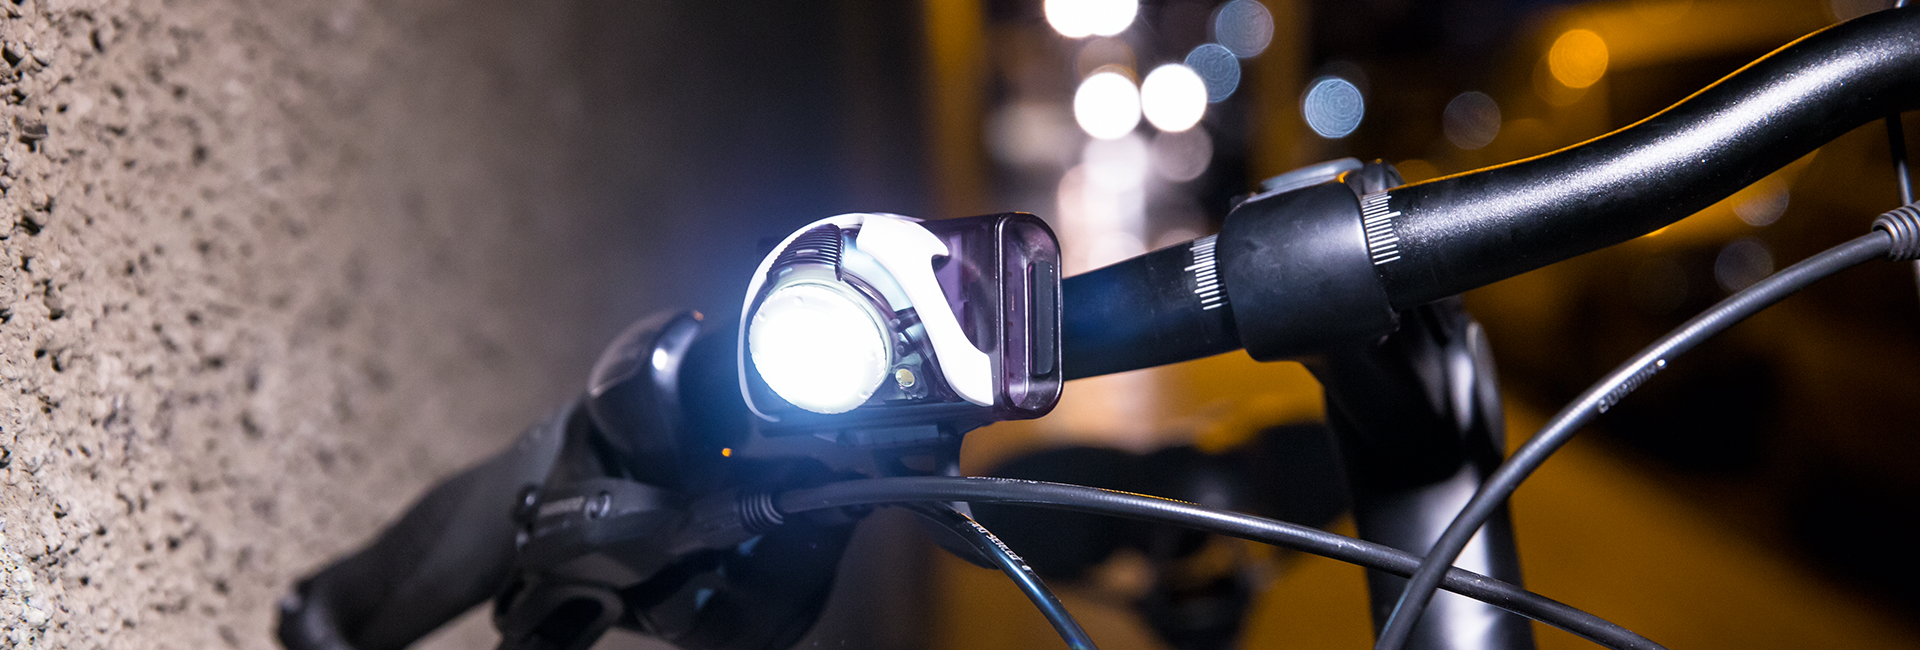 Bike with a light